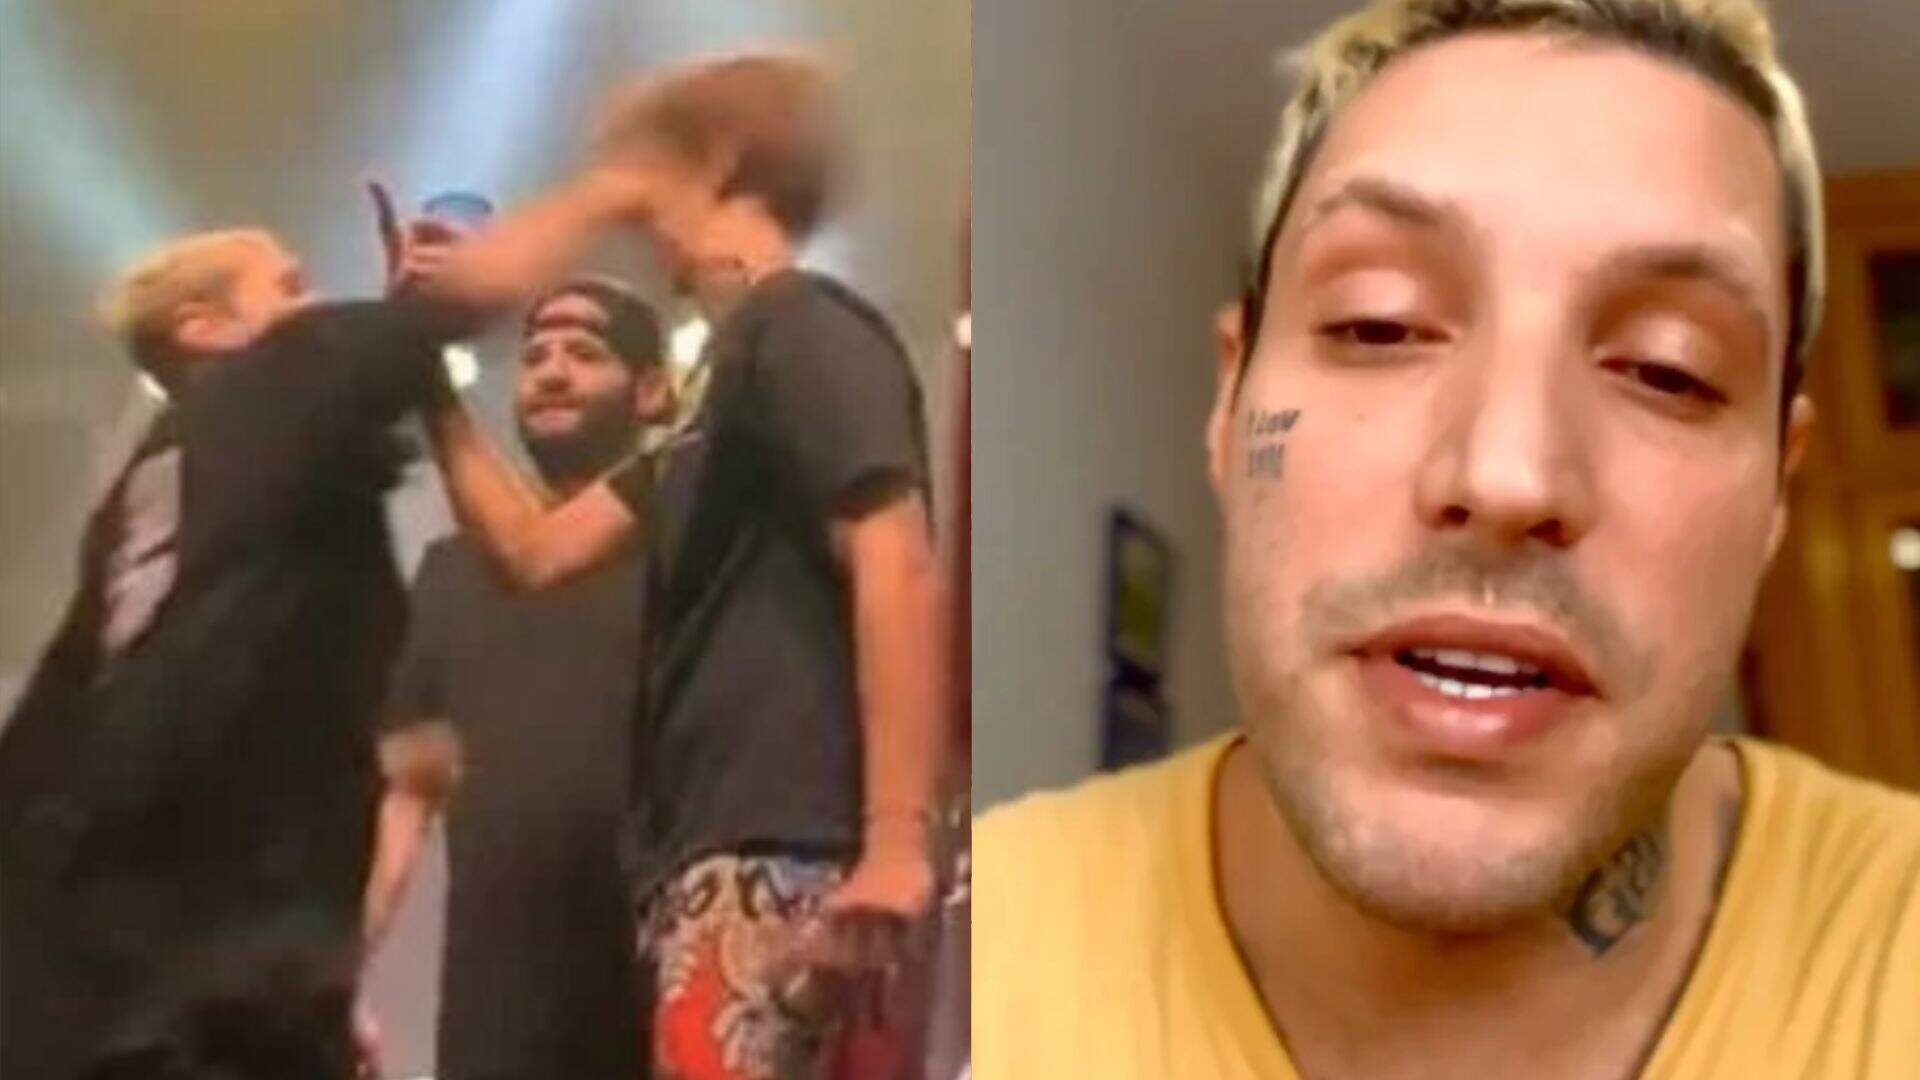 Vocalista de famoso grupo de hip hop se pronuncia após dar soco na cara de fã no palco - Metropolitana FM